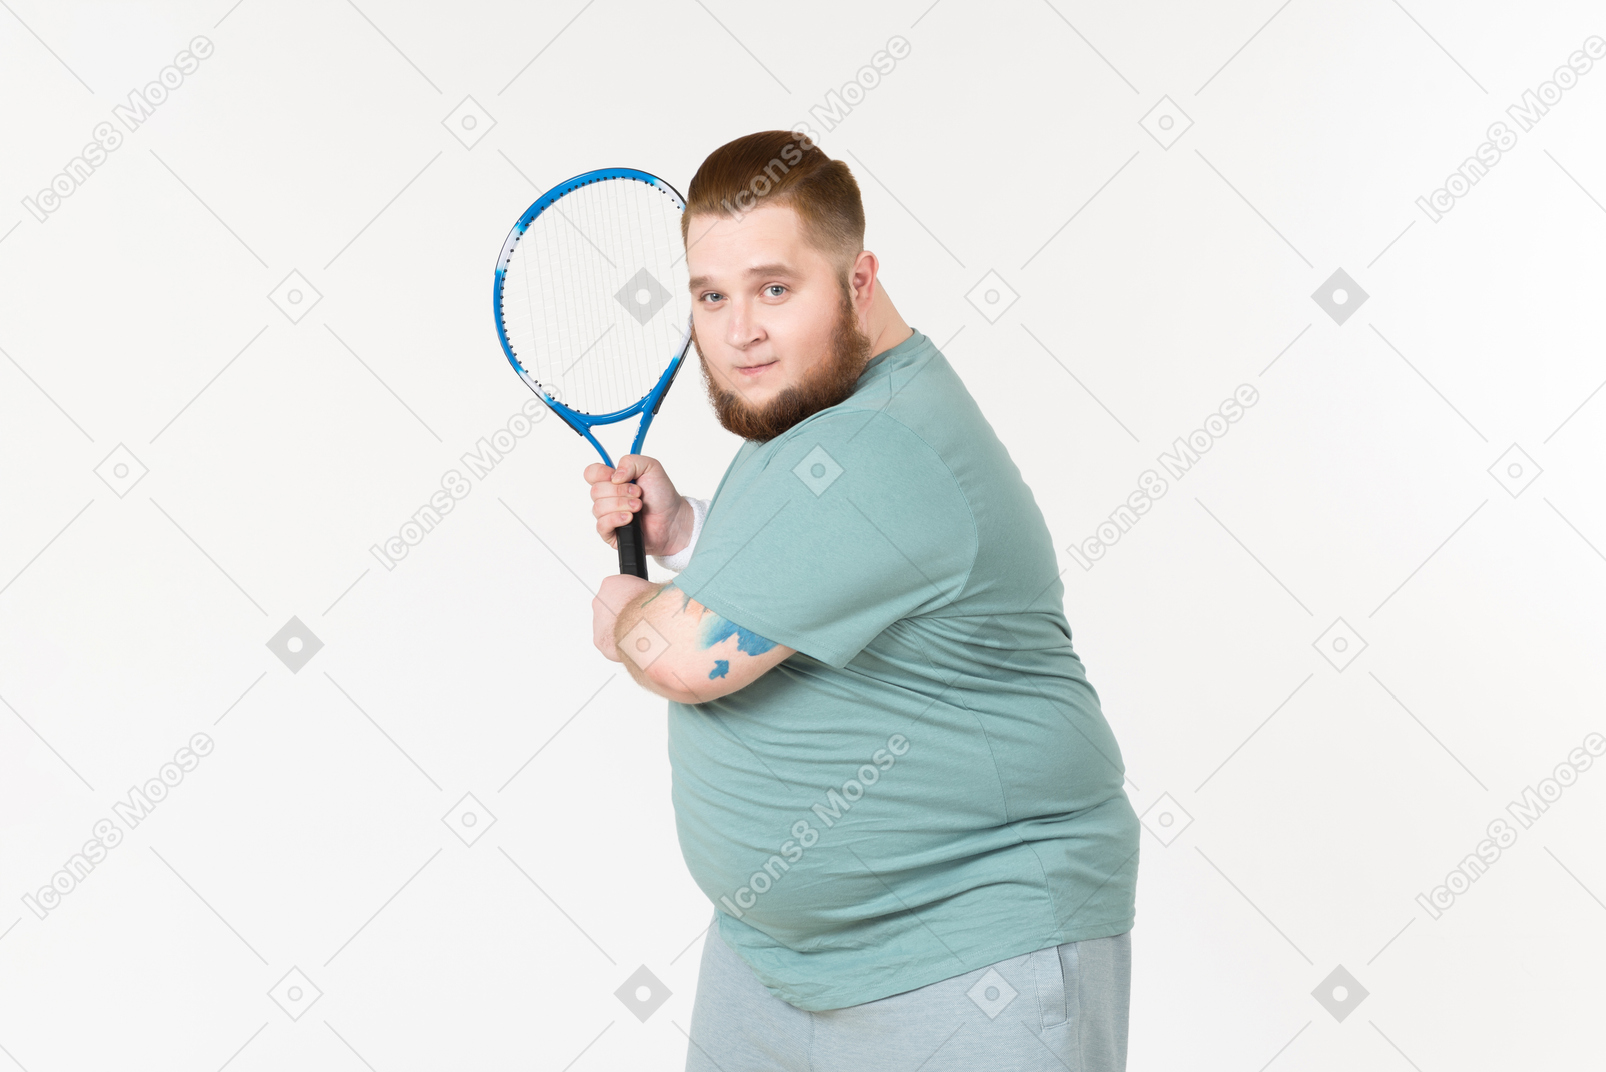 Grand mec en tenue de sport tenant une raquette de tennis